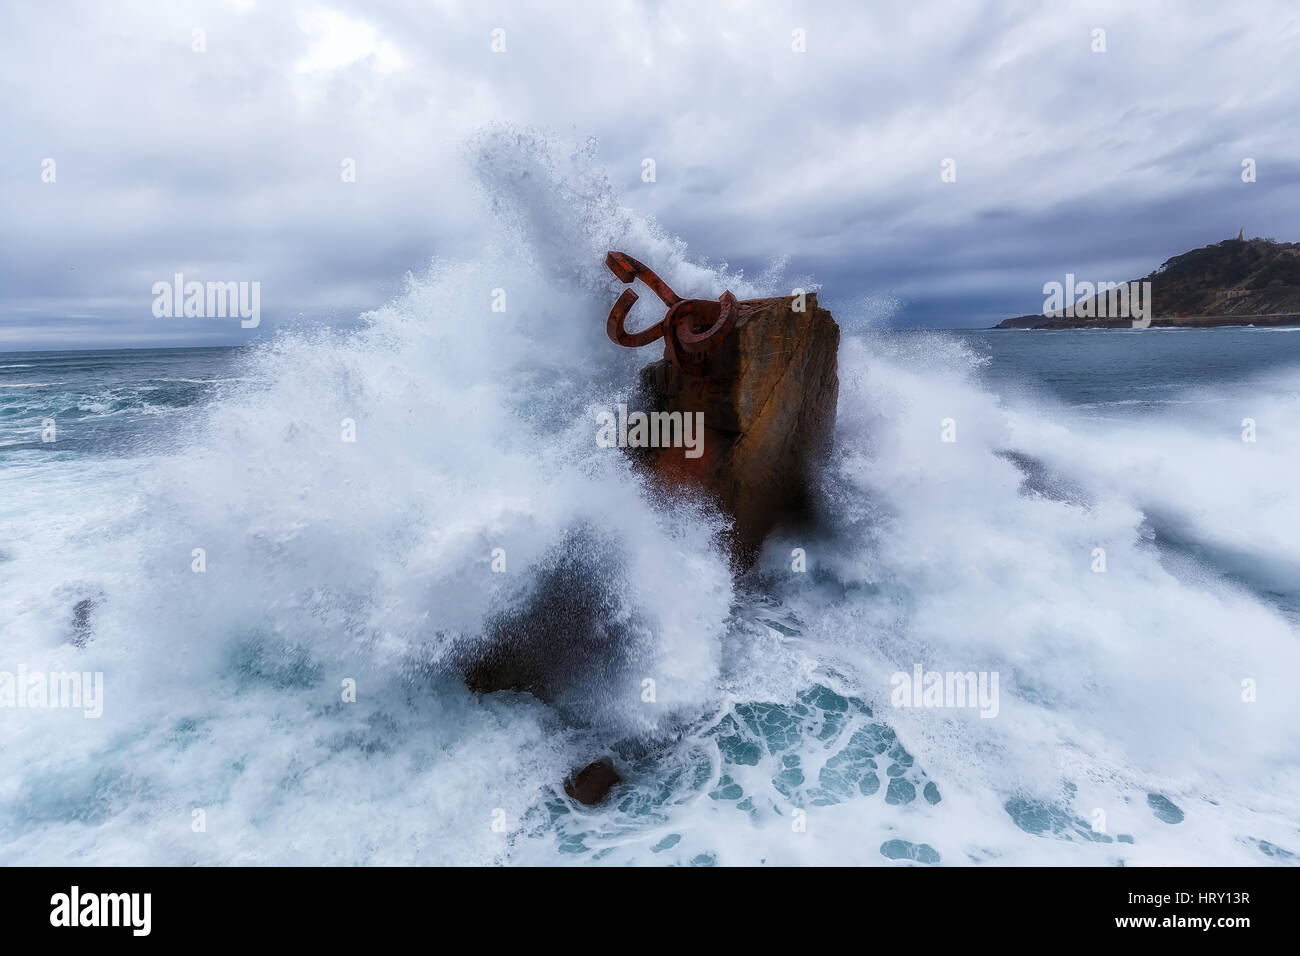 Waves splashing in El peine de los vientos, Chillida's sculpture Stock Photo